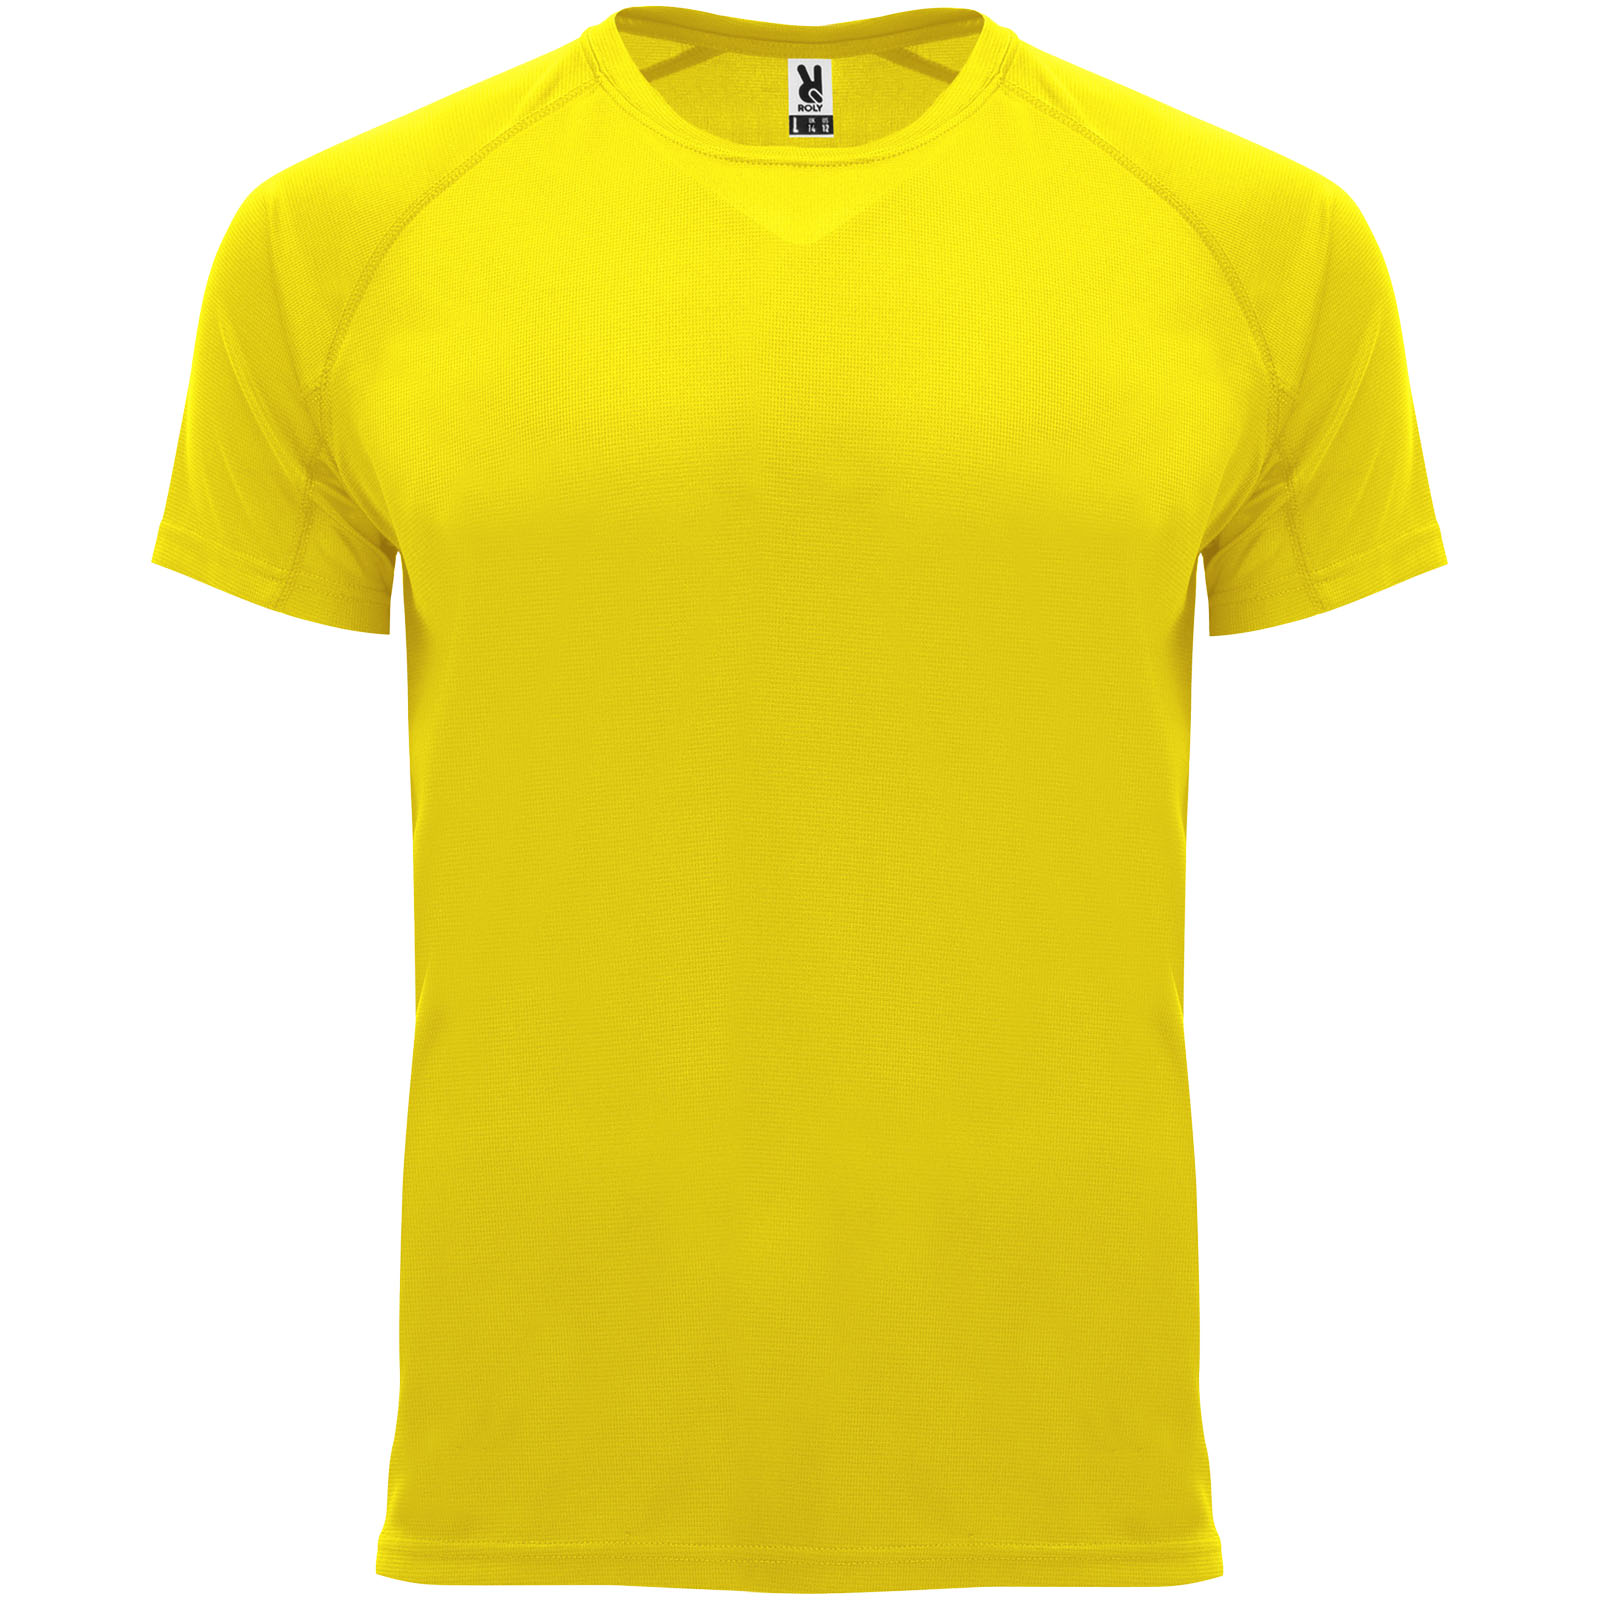 Men's short sleeve sports t-shirt from Bahrain - Wisbech